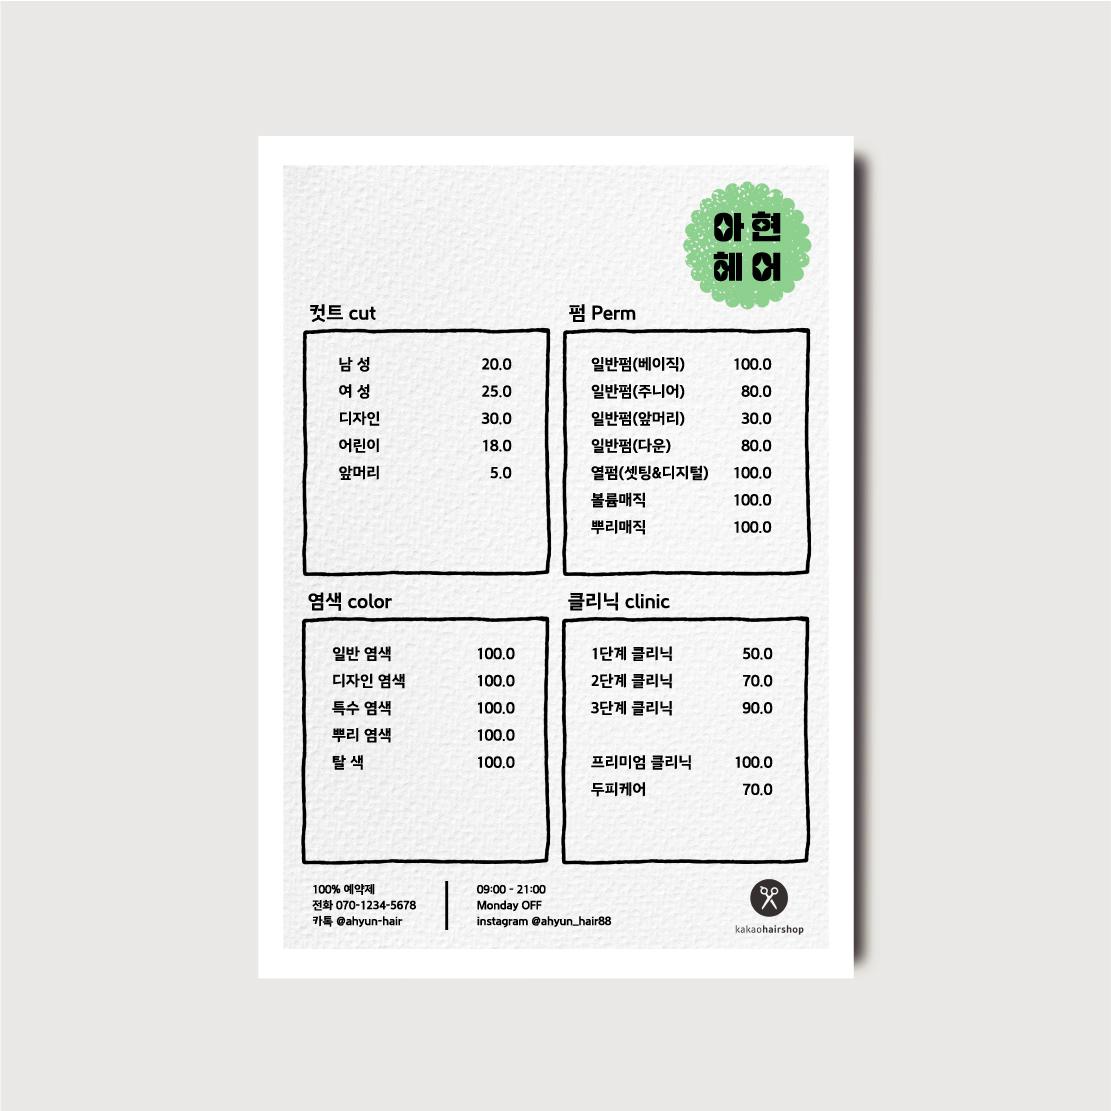 속눈썹 반영구 미용실 뷰티샵 네일샵 헤어샵 가격표 일러스트 메뉴판 디자인 인쇄 [poi396]